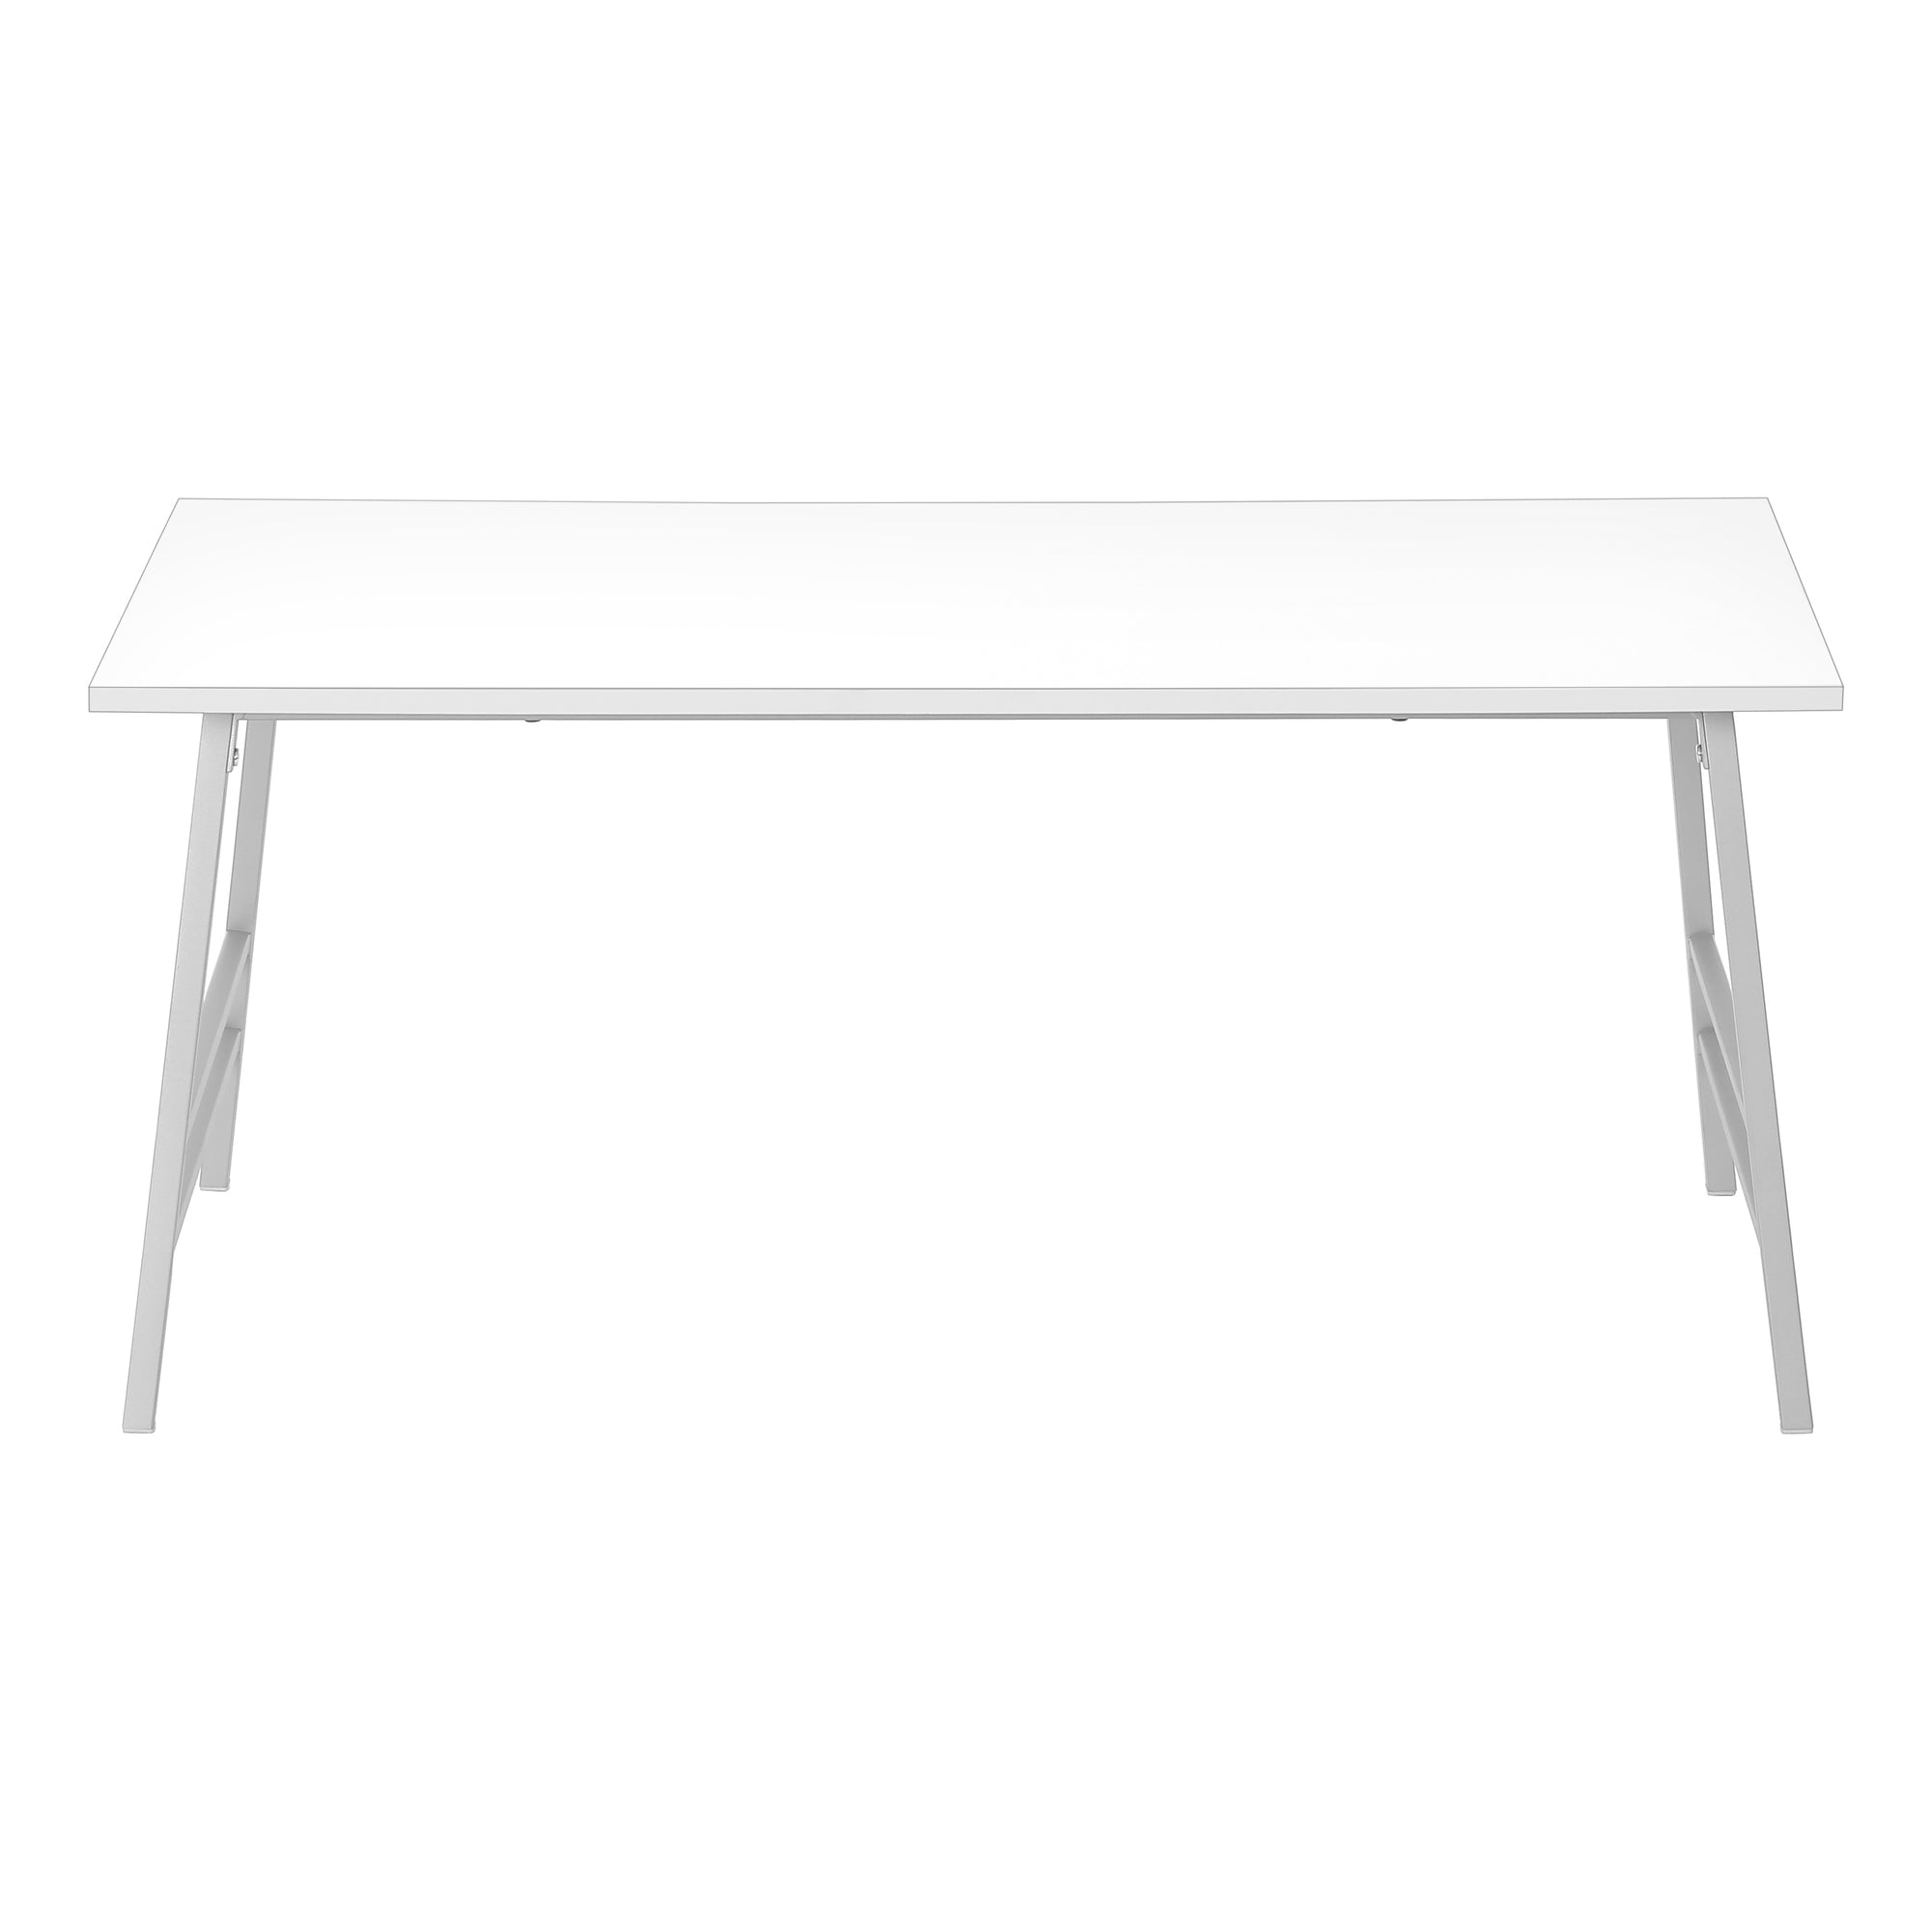 MN-603790    Coffee Table - 40"L / White / Silver Metal